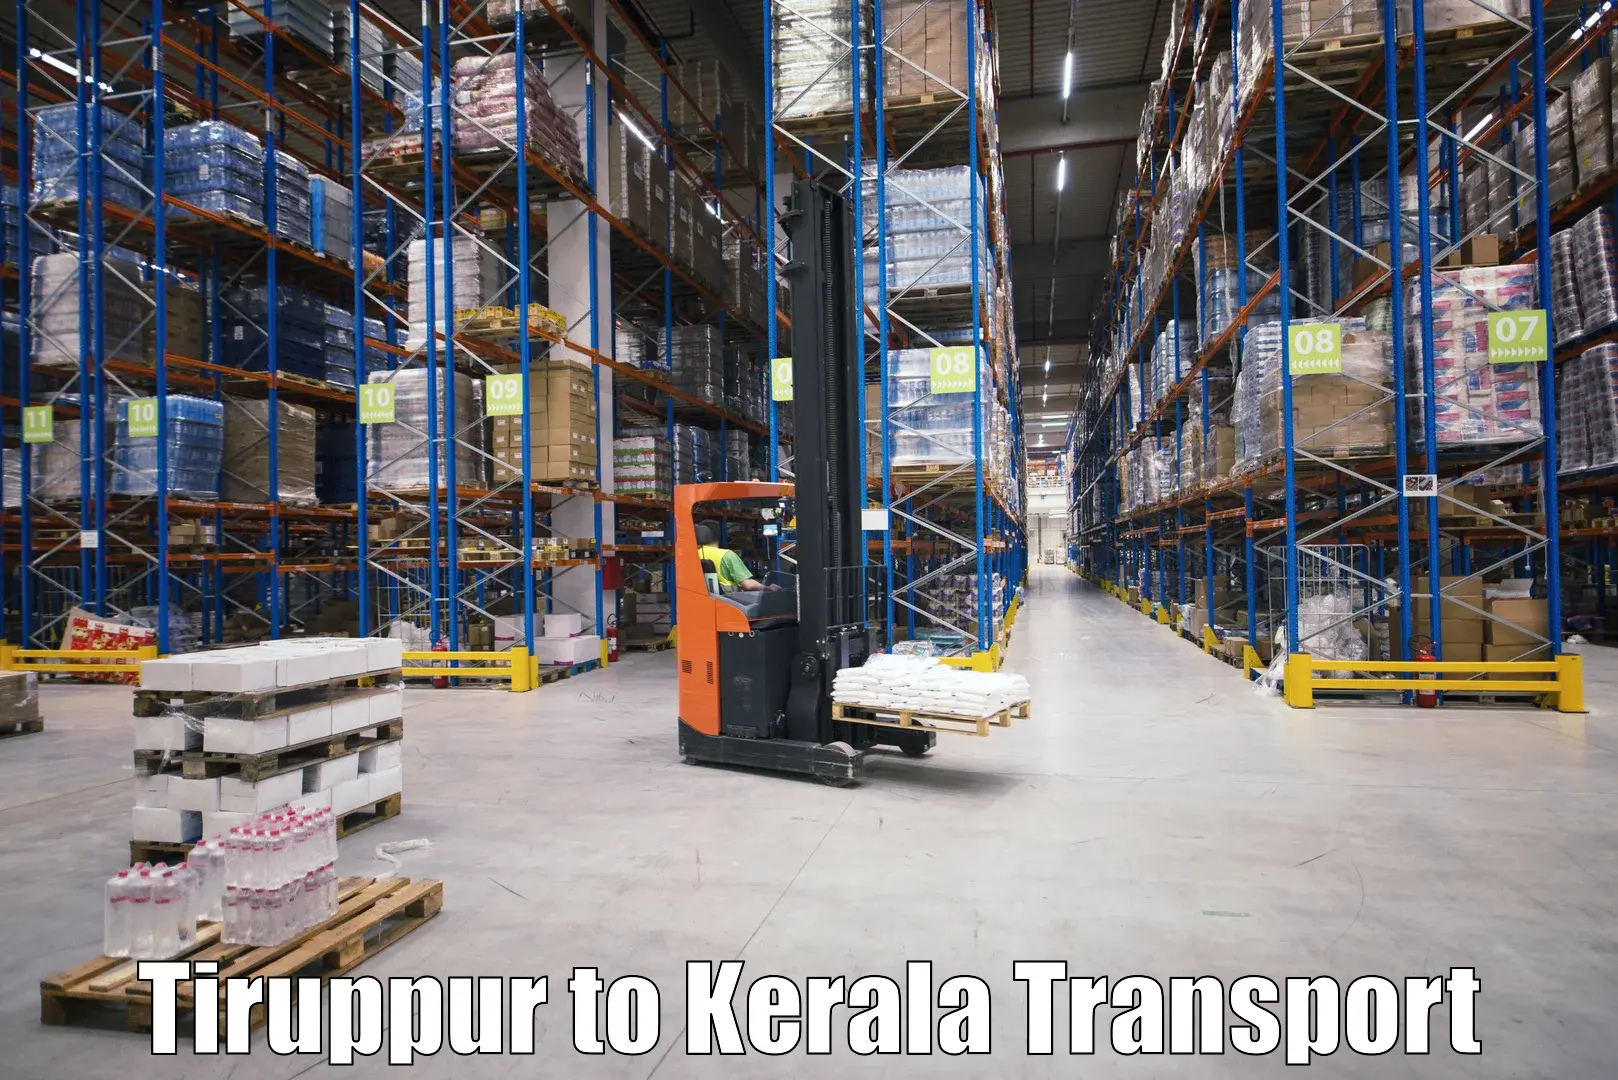 Nearest transport service in Tiruppur to Nochad